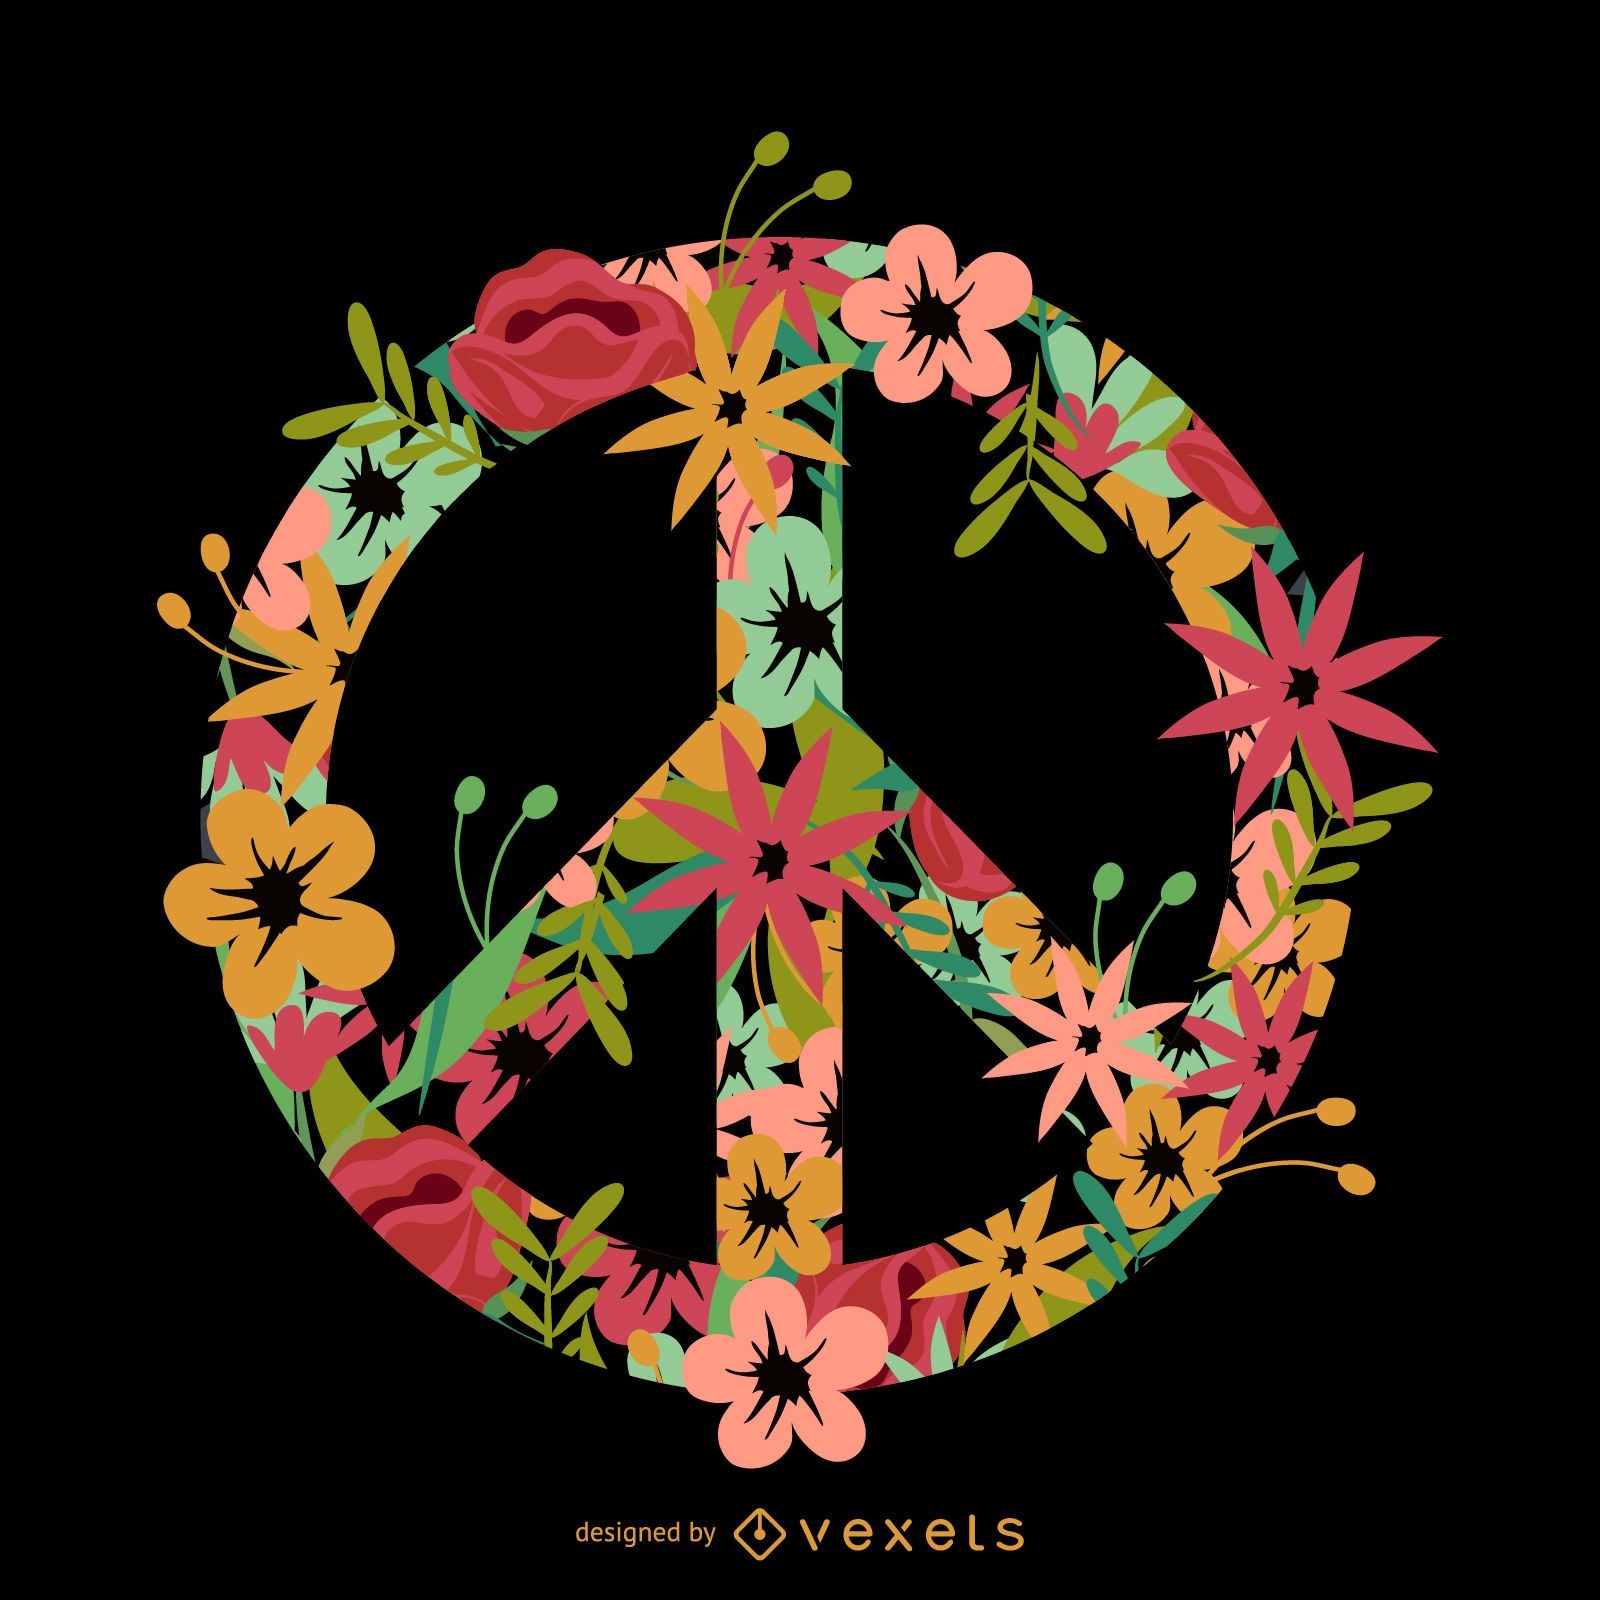 S?mbolo da paz incorporado em flor